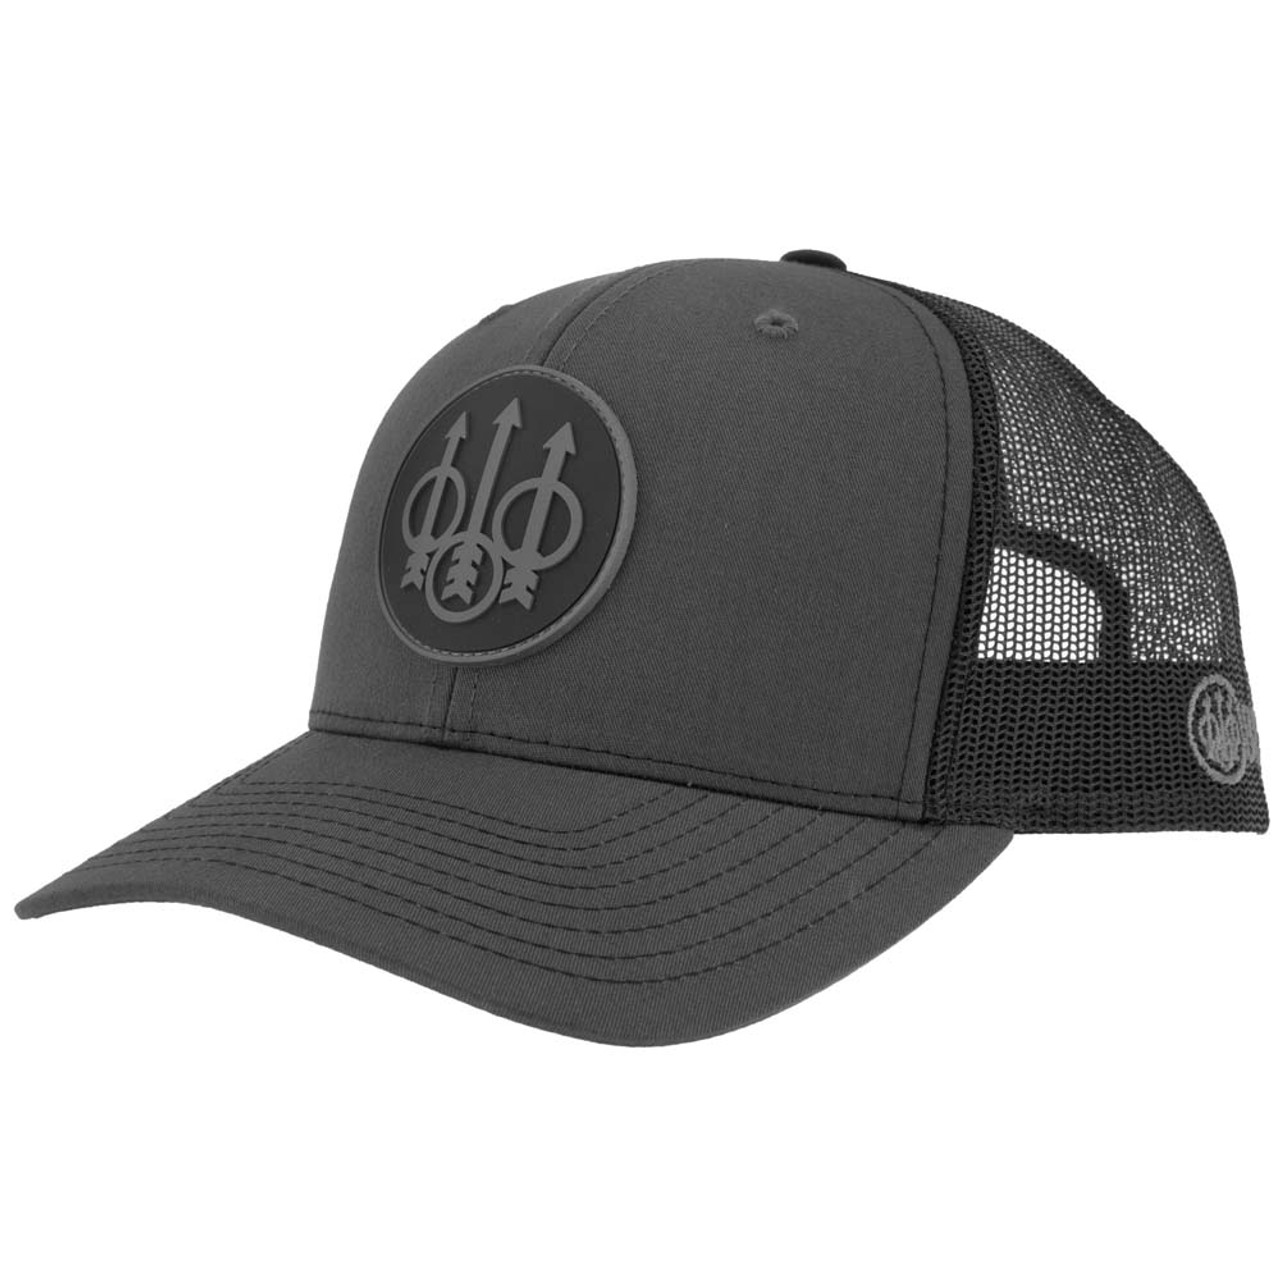 Beretta JS Trucker Hat-Charcoal & Black- Front